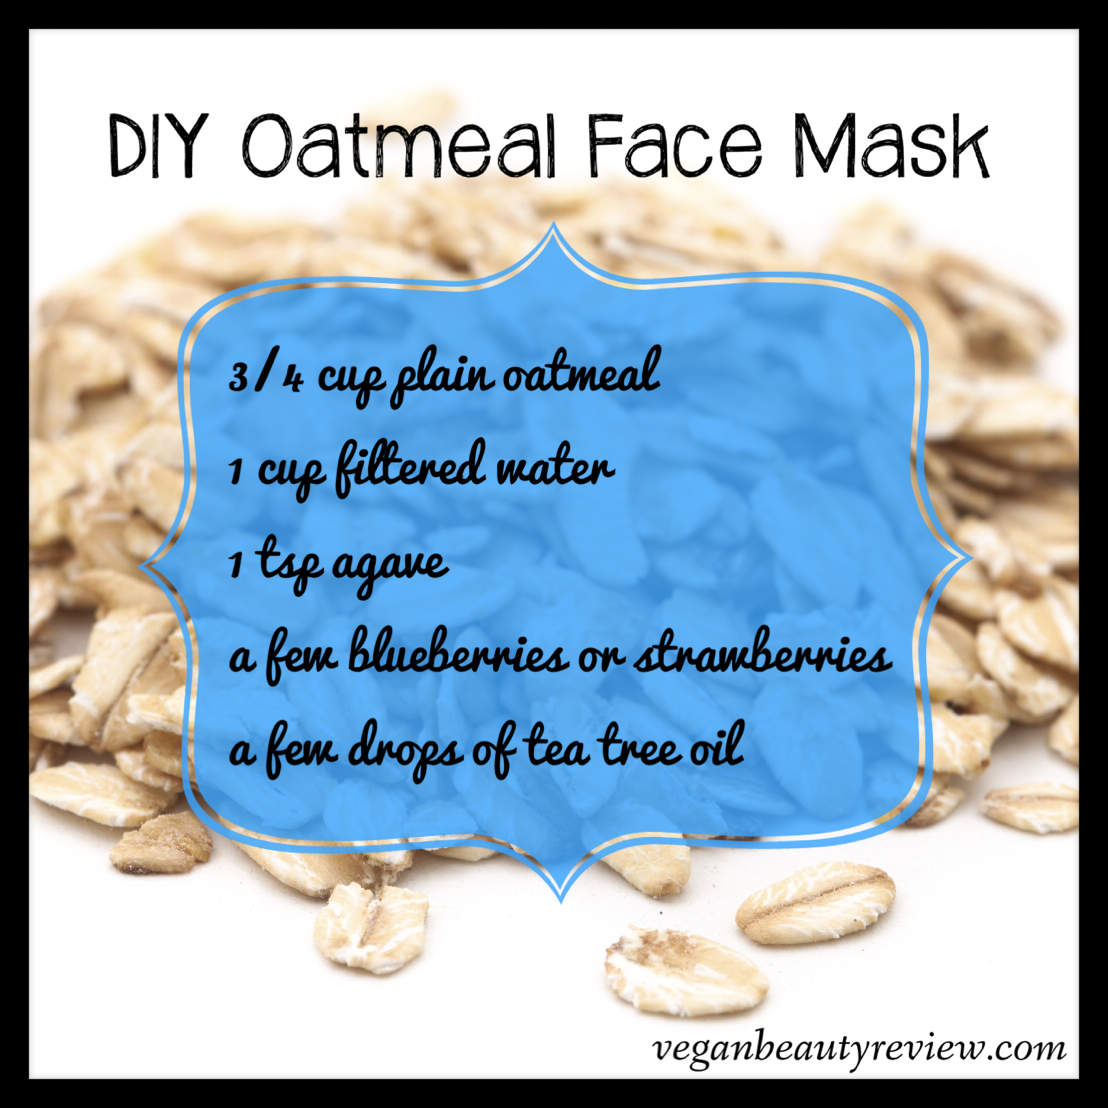 DIY Oatmeal Face Mask - Vegan Beauty